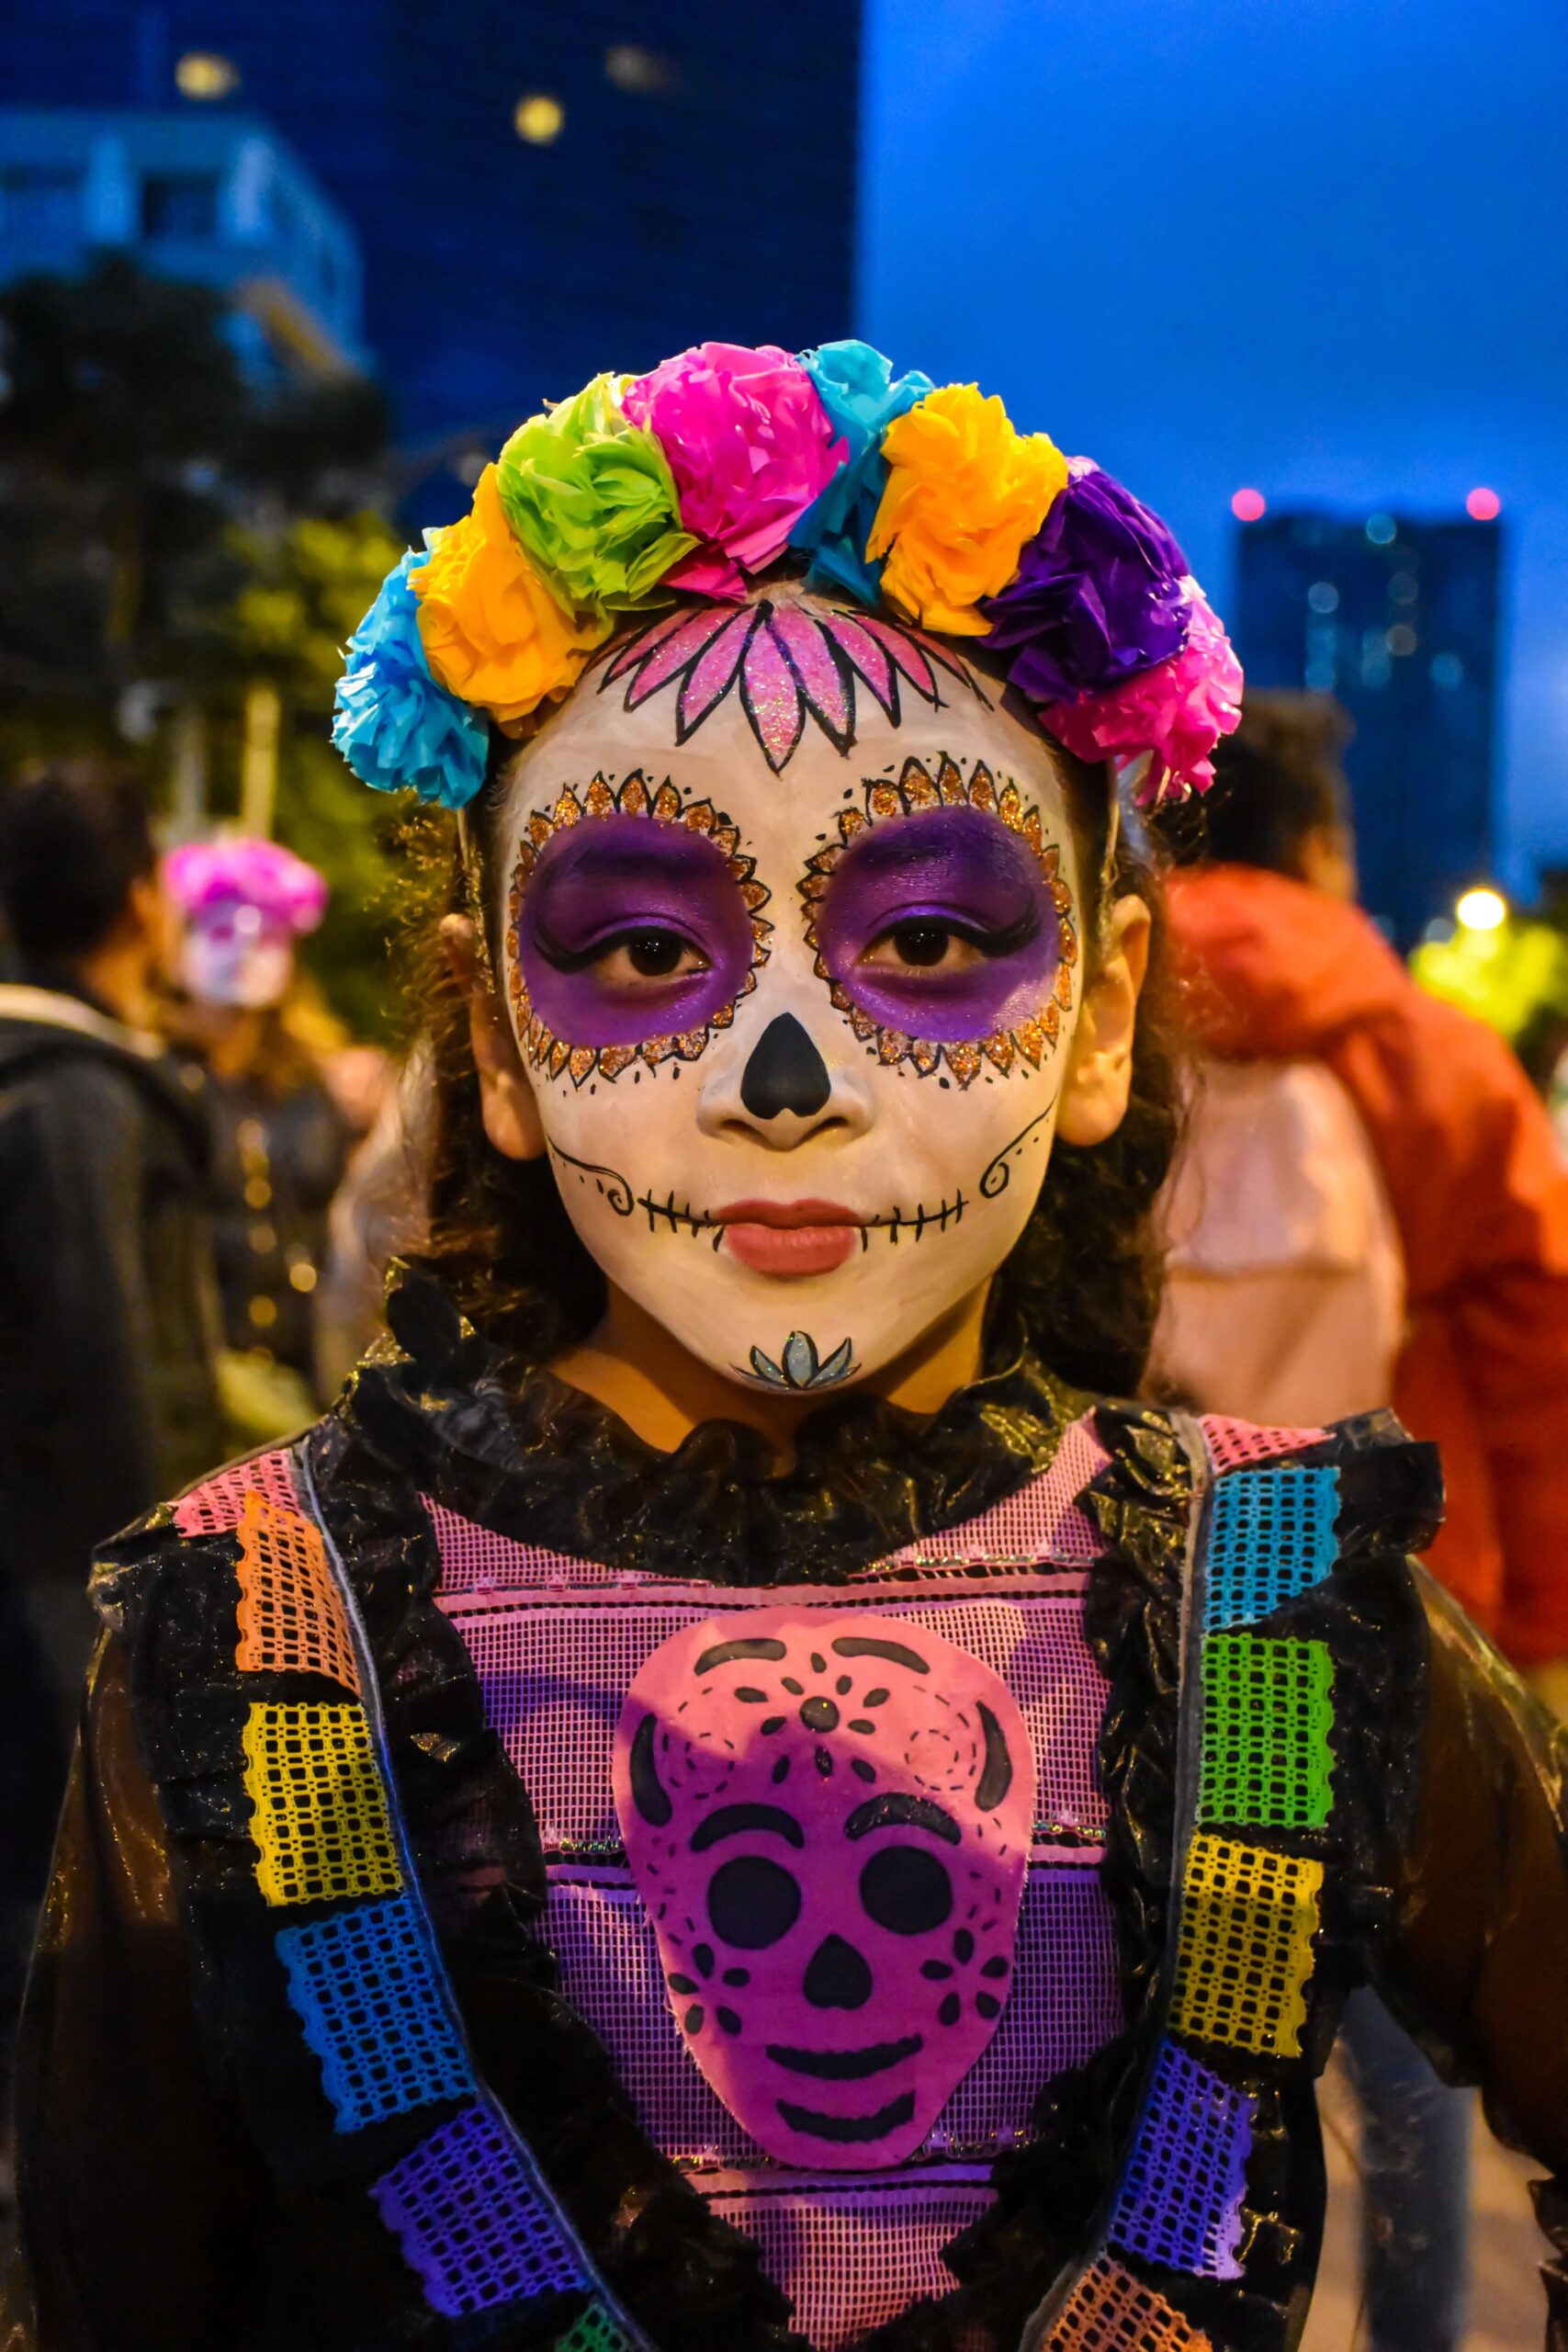 The first day of Dia de Los Muertos is known as Dia de Los Angelitos - Mad Halloween